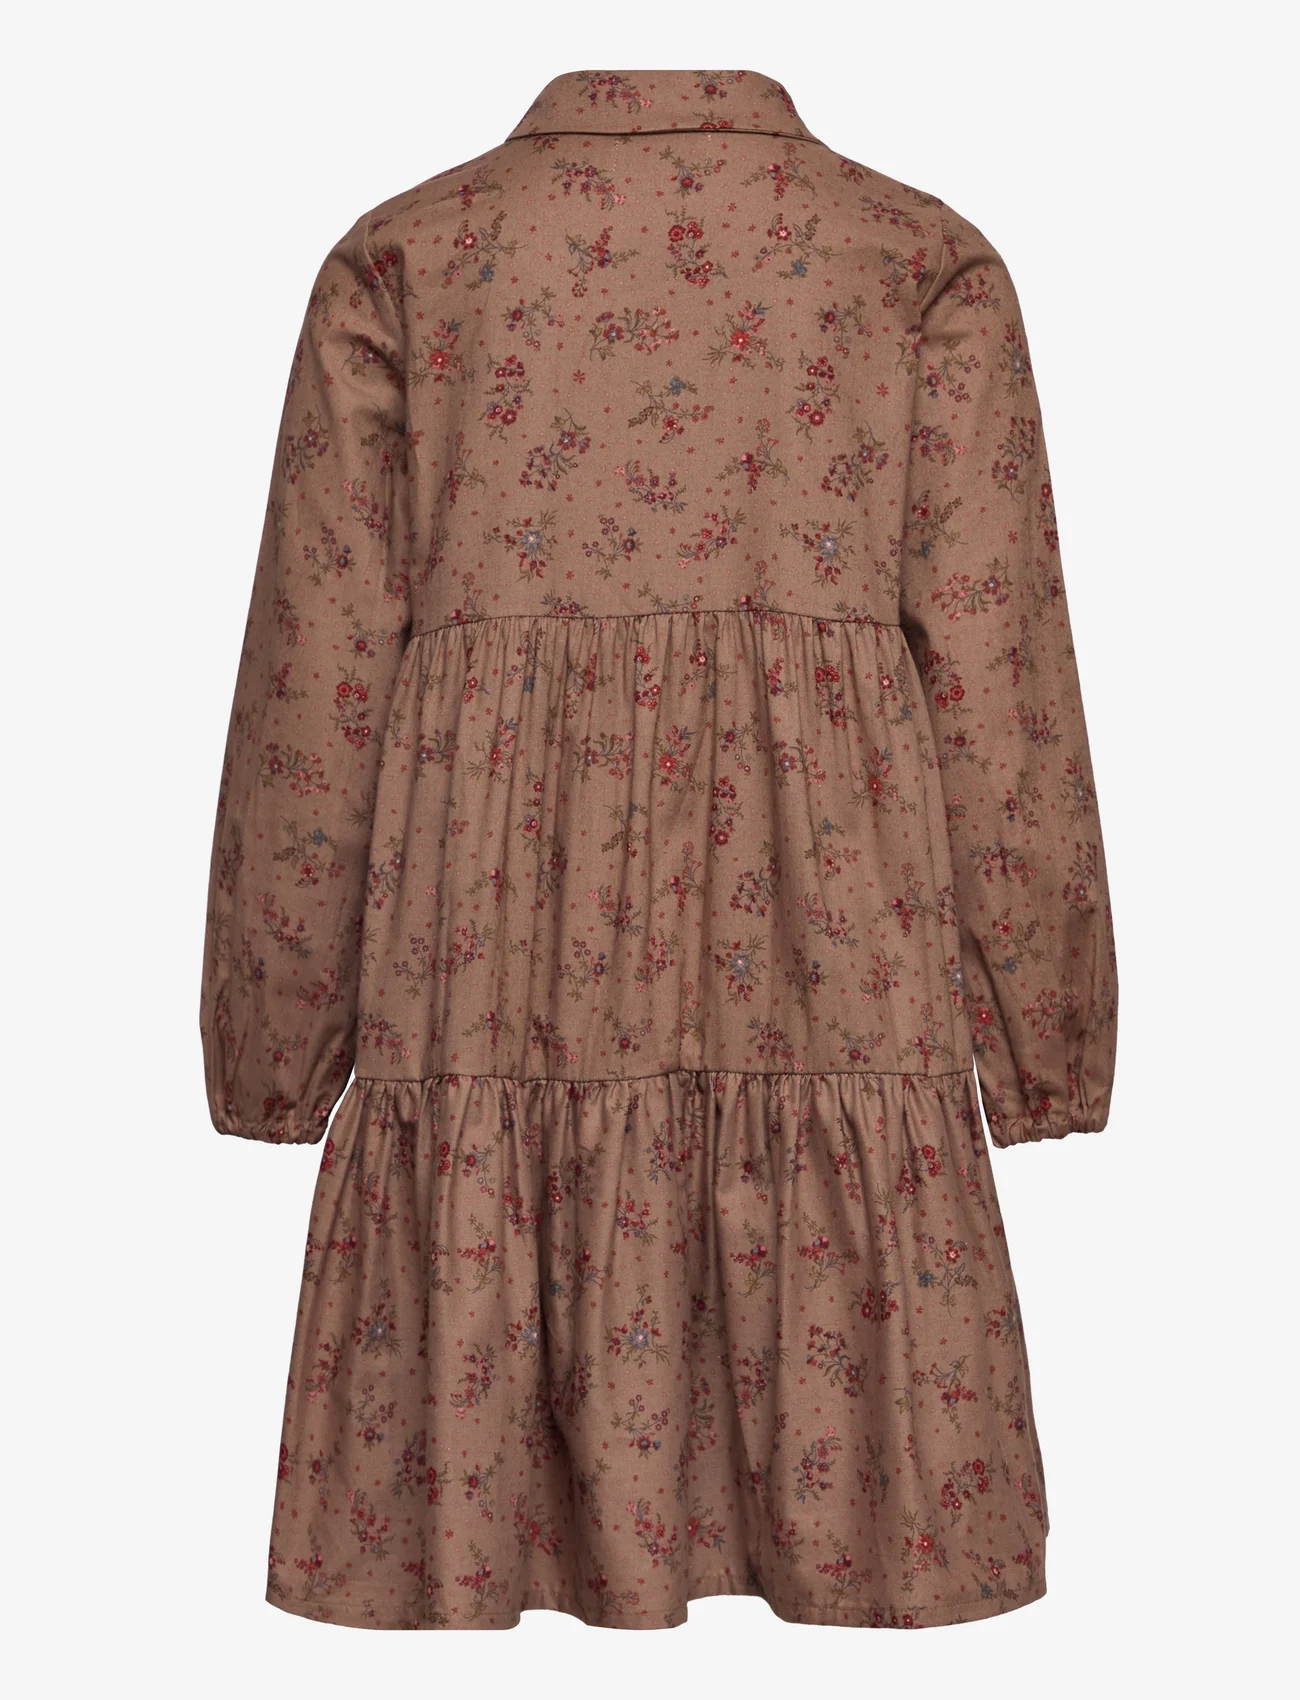 Wheat - Dress Felucca - sukienki codzienne z długim rękawem - berry dust flowers - 1